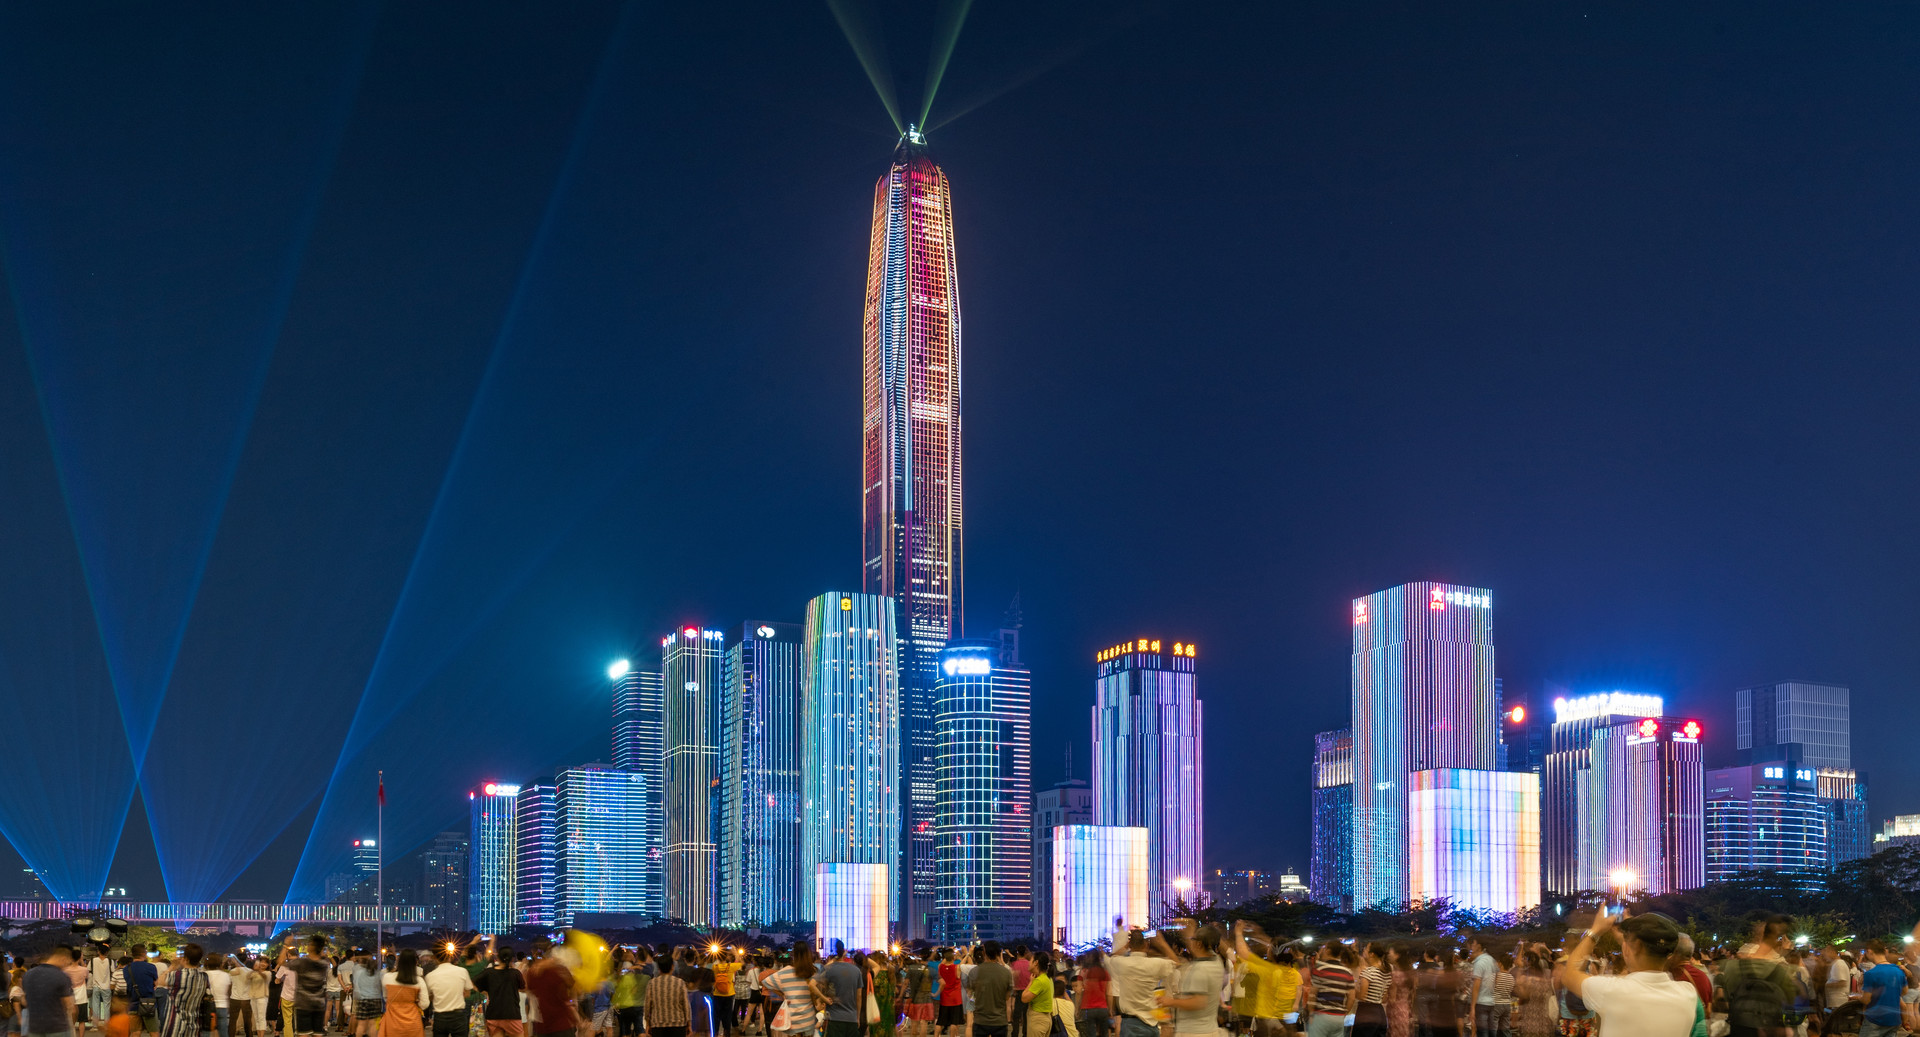 深圳市民中心灯光秀几点结束